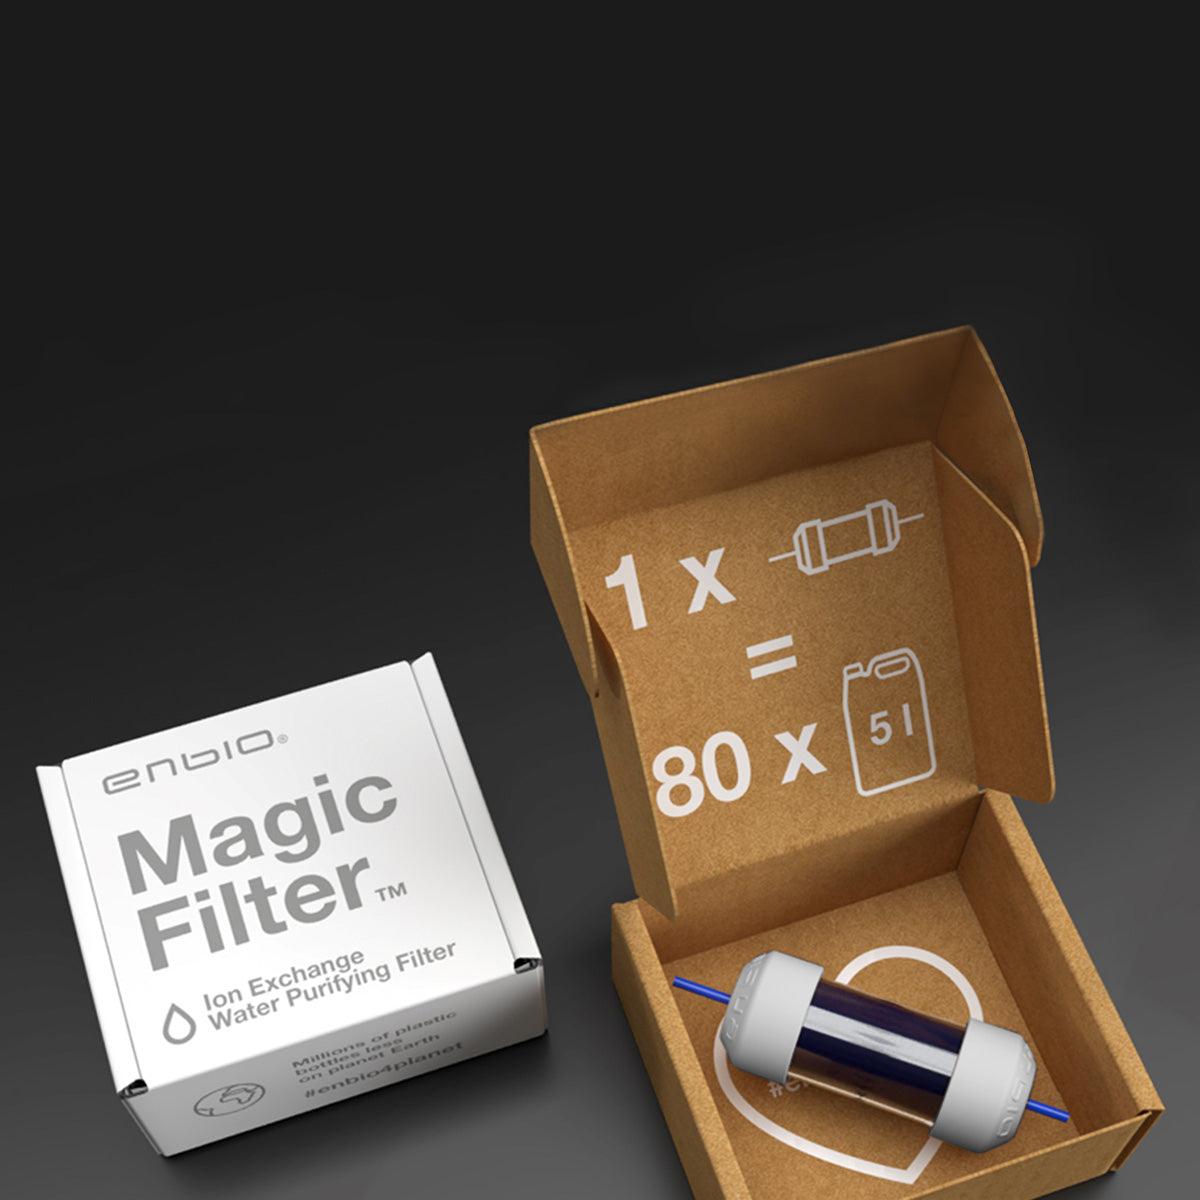 Magic Filter Autoclav ENBIO - MIGSHOP.RO